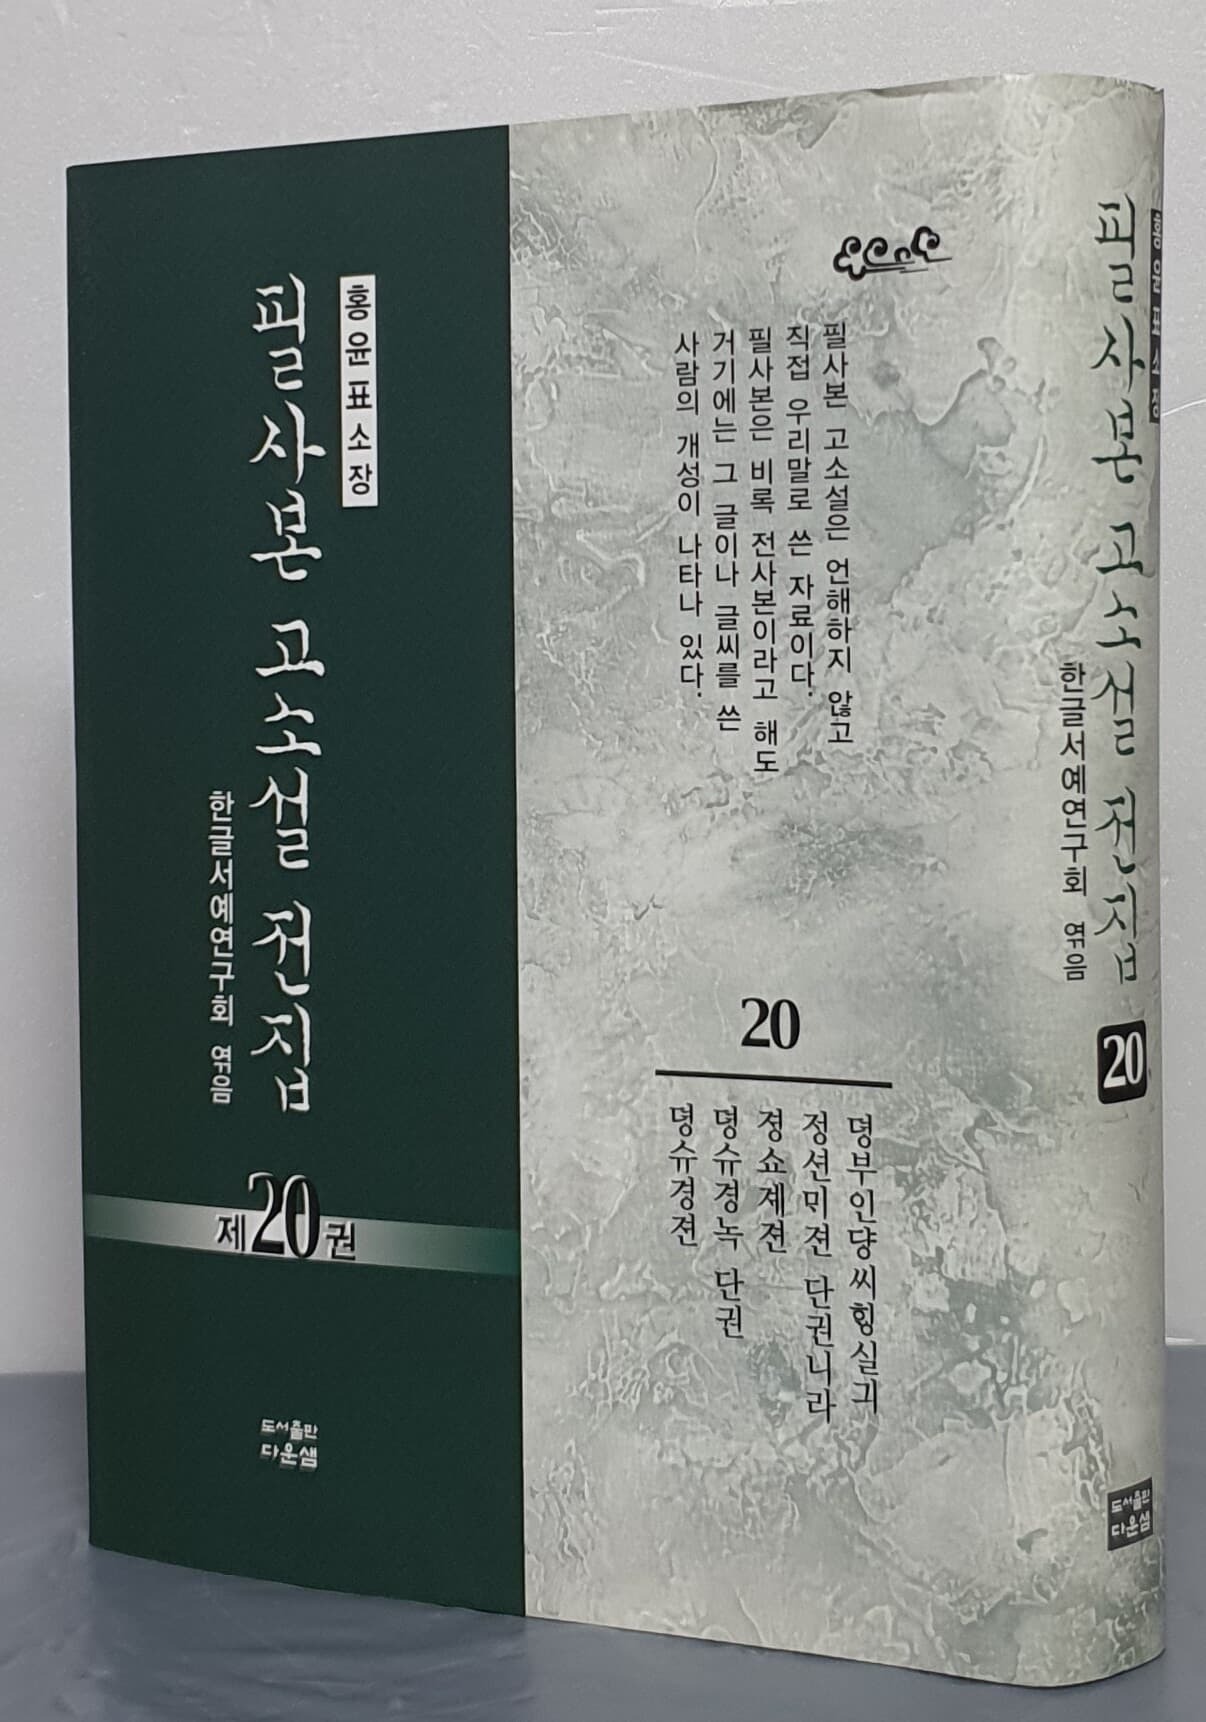 홍윤표 소장 필사본 고소설 전집 1~20 (전20권)